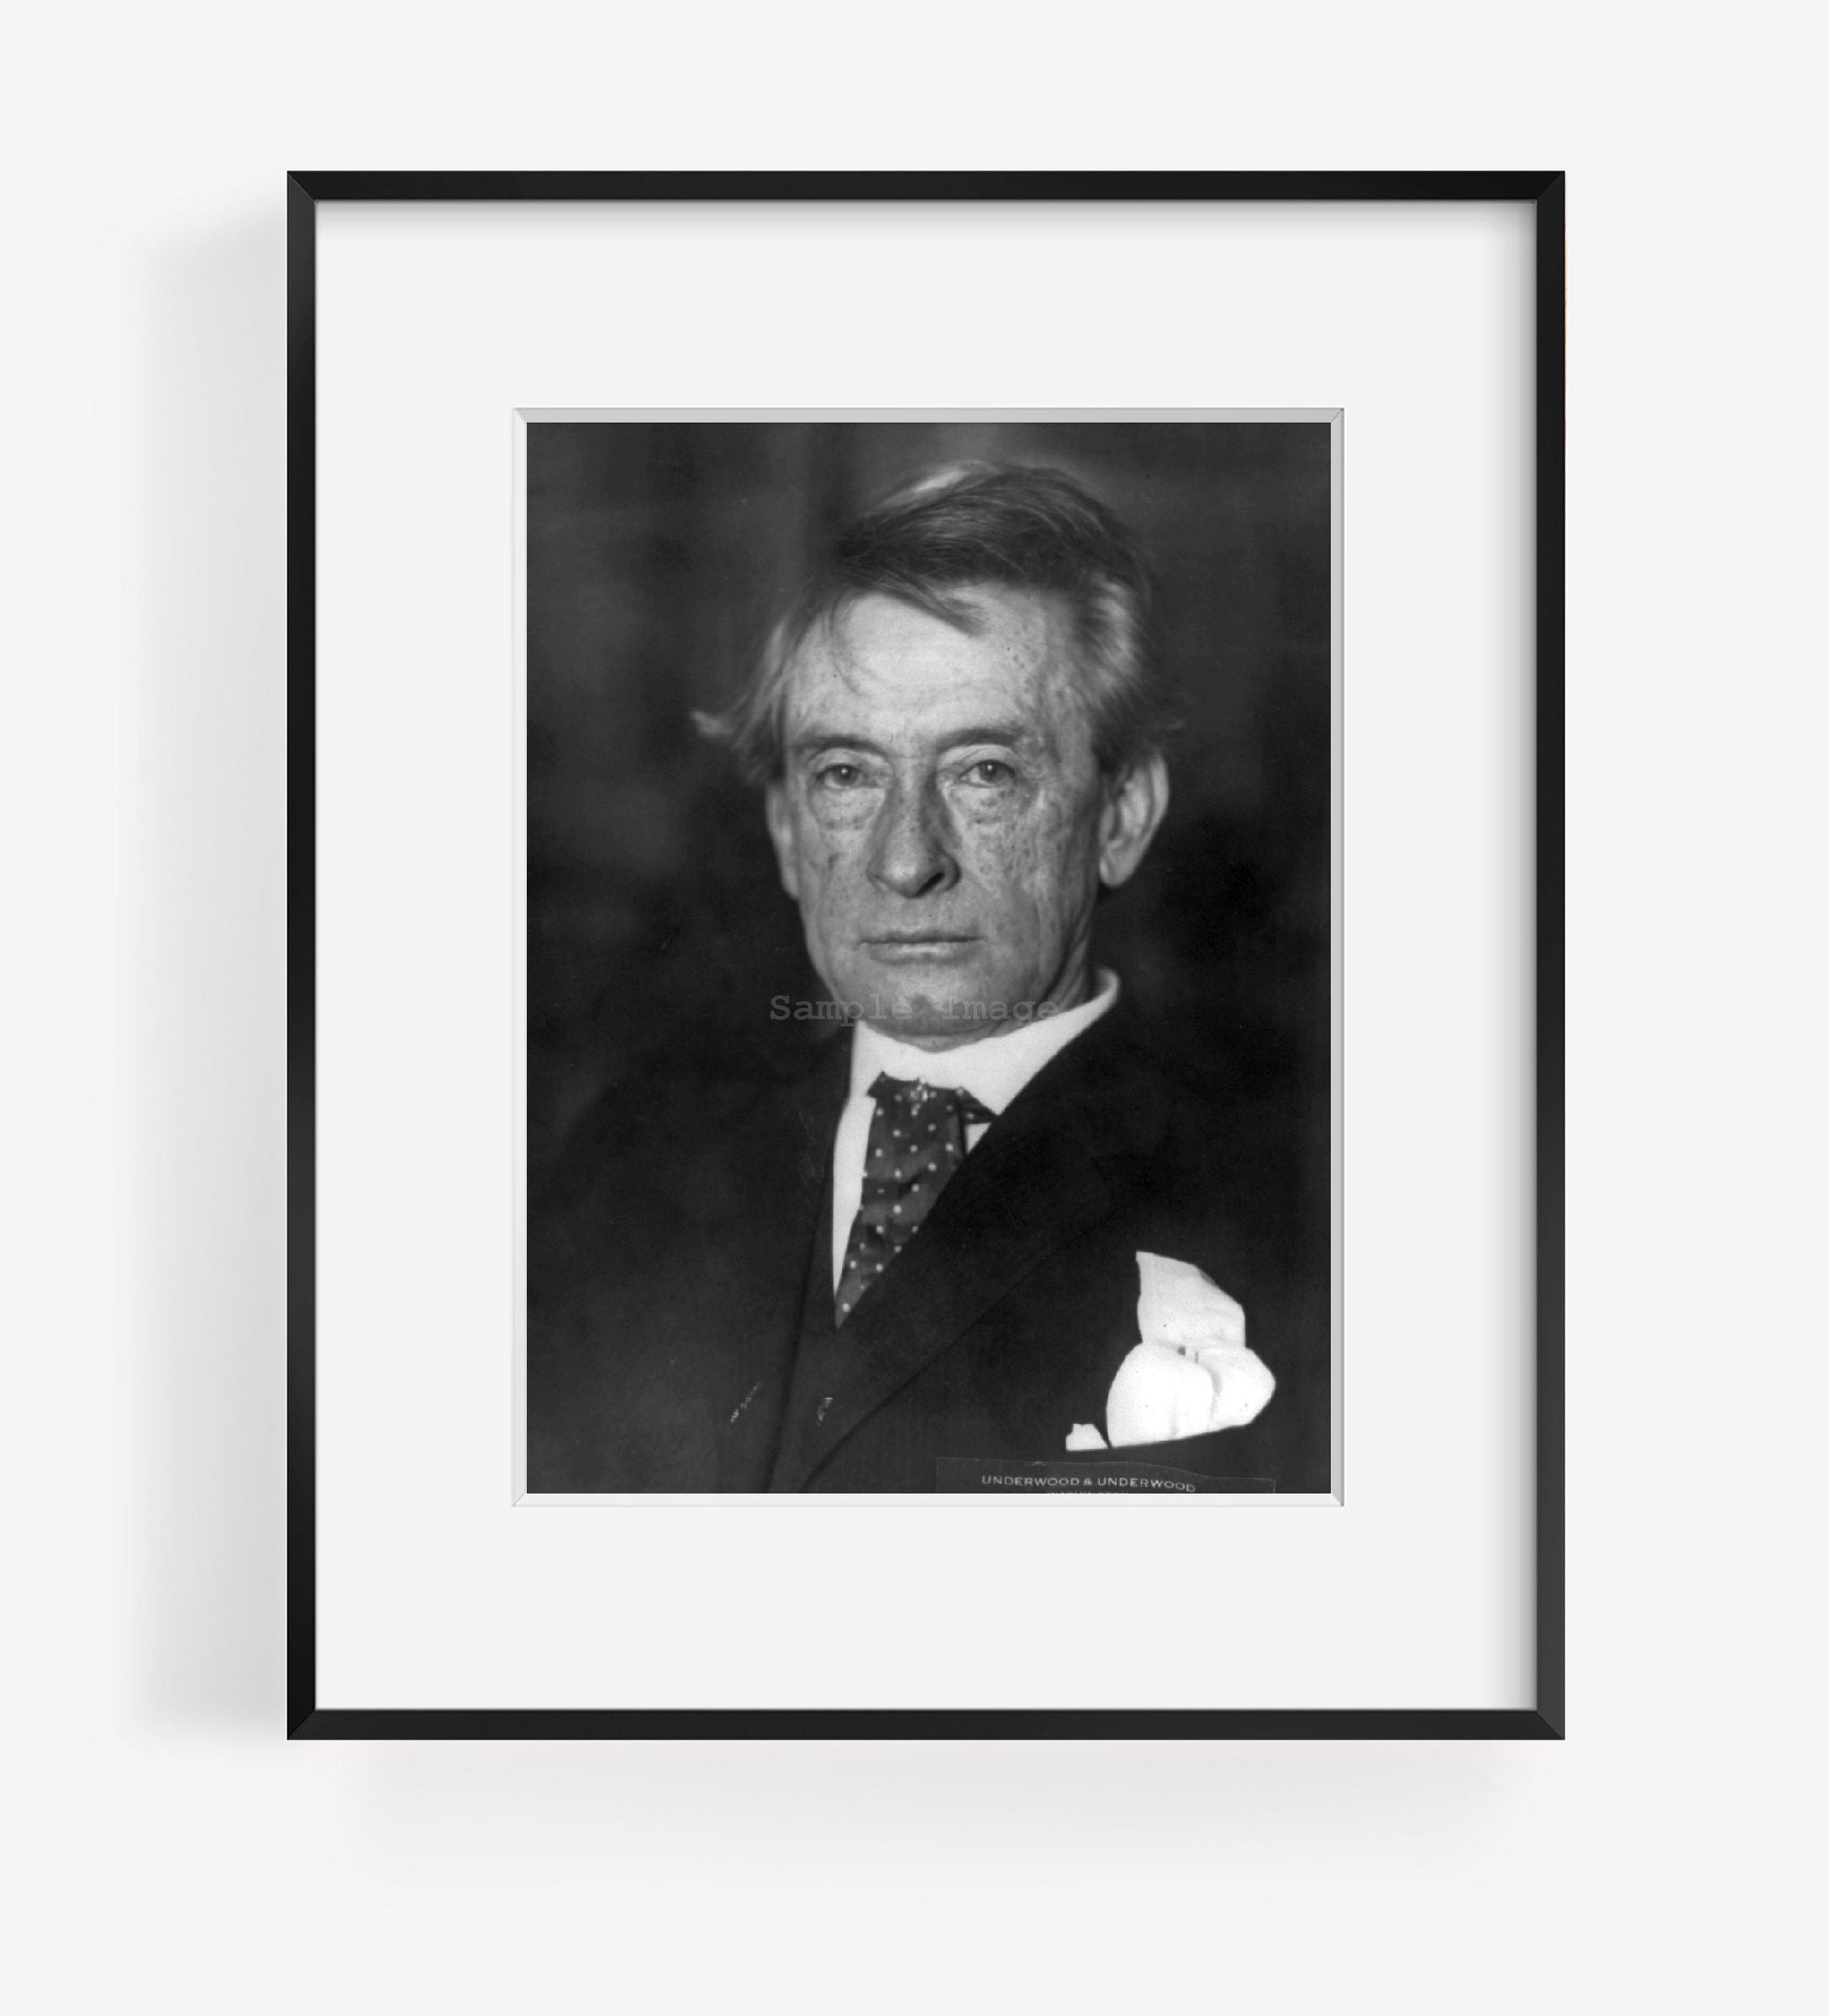 ca. 1920 photograph of Thomas Edward Watson, 1856-1922, bust portrait